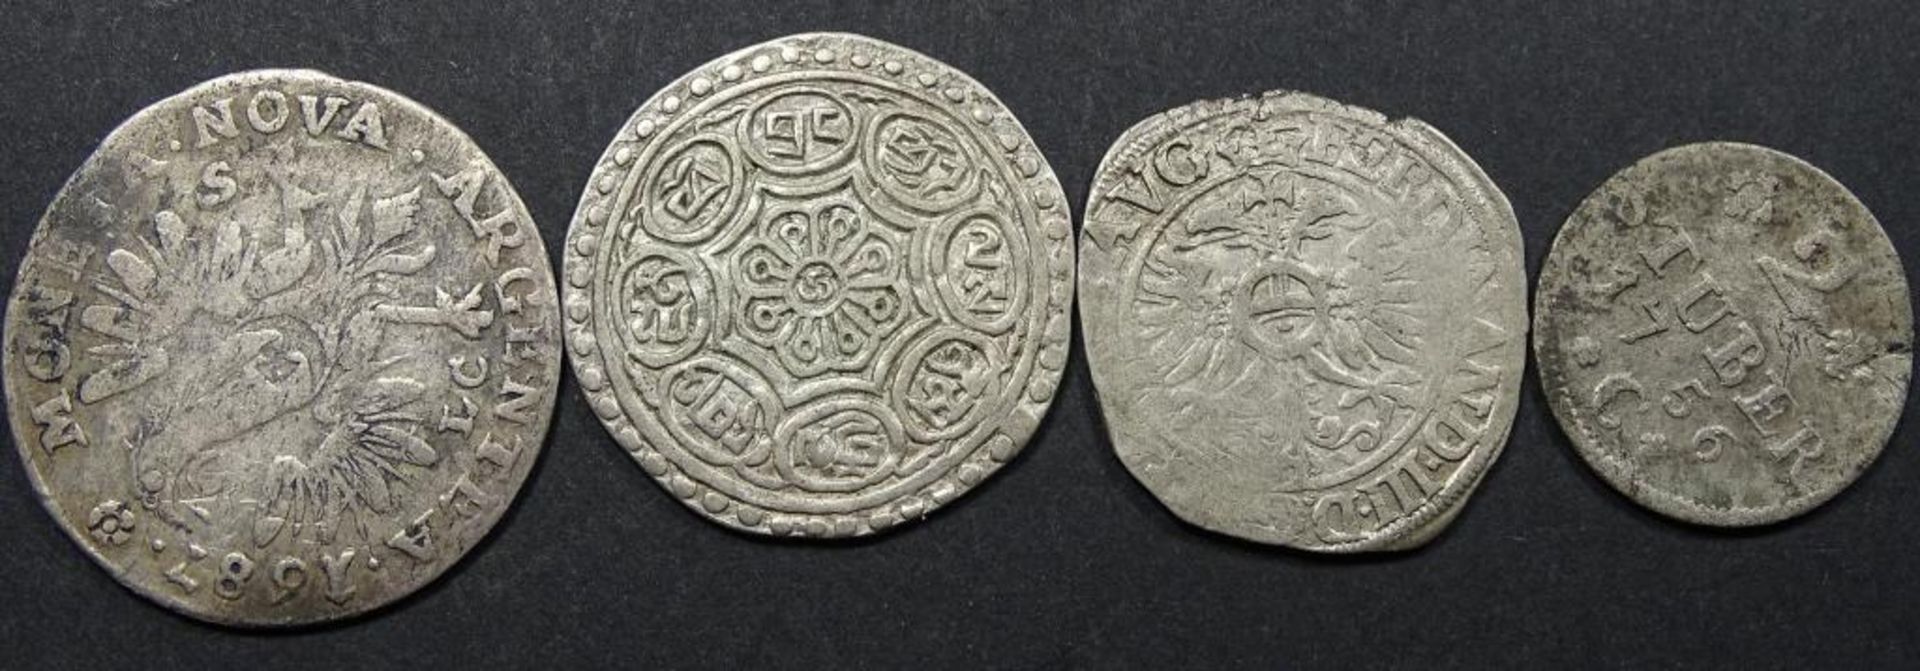 Antike Silber Münzen.ges.gew. 15gr